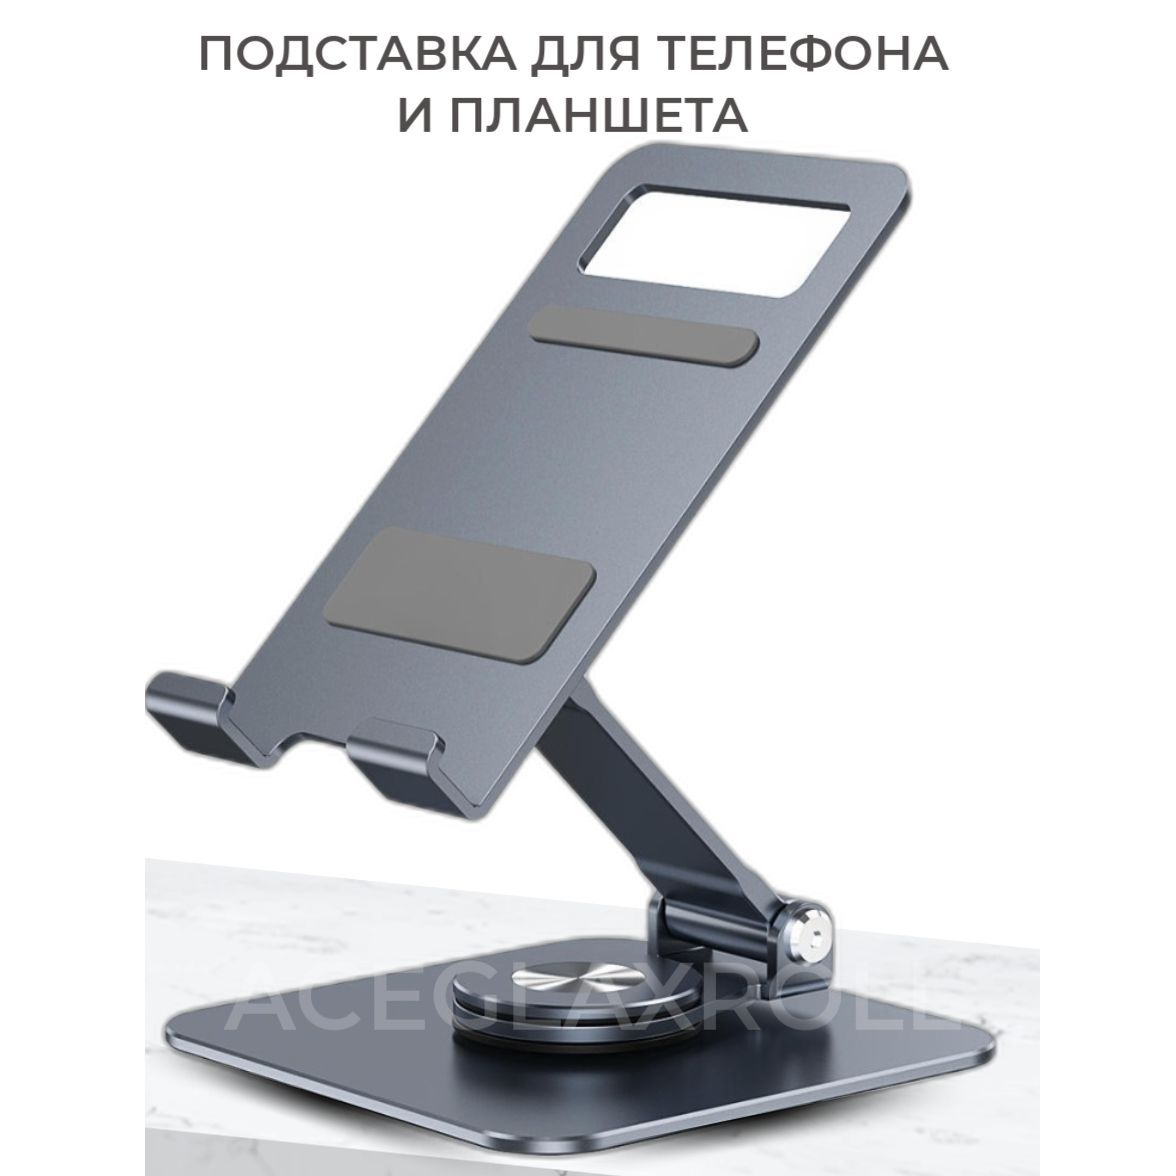 Как сделать Подставку для телефона/планшета из бумаги. Оригами. Origami Phone stand/holder.